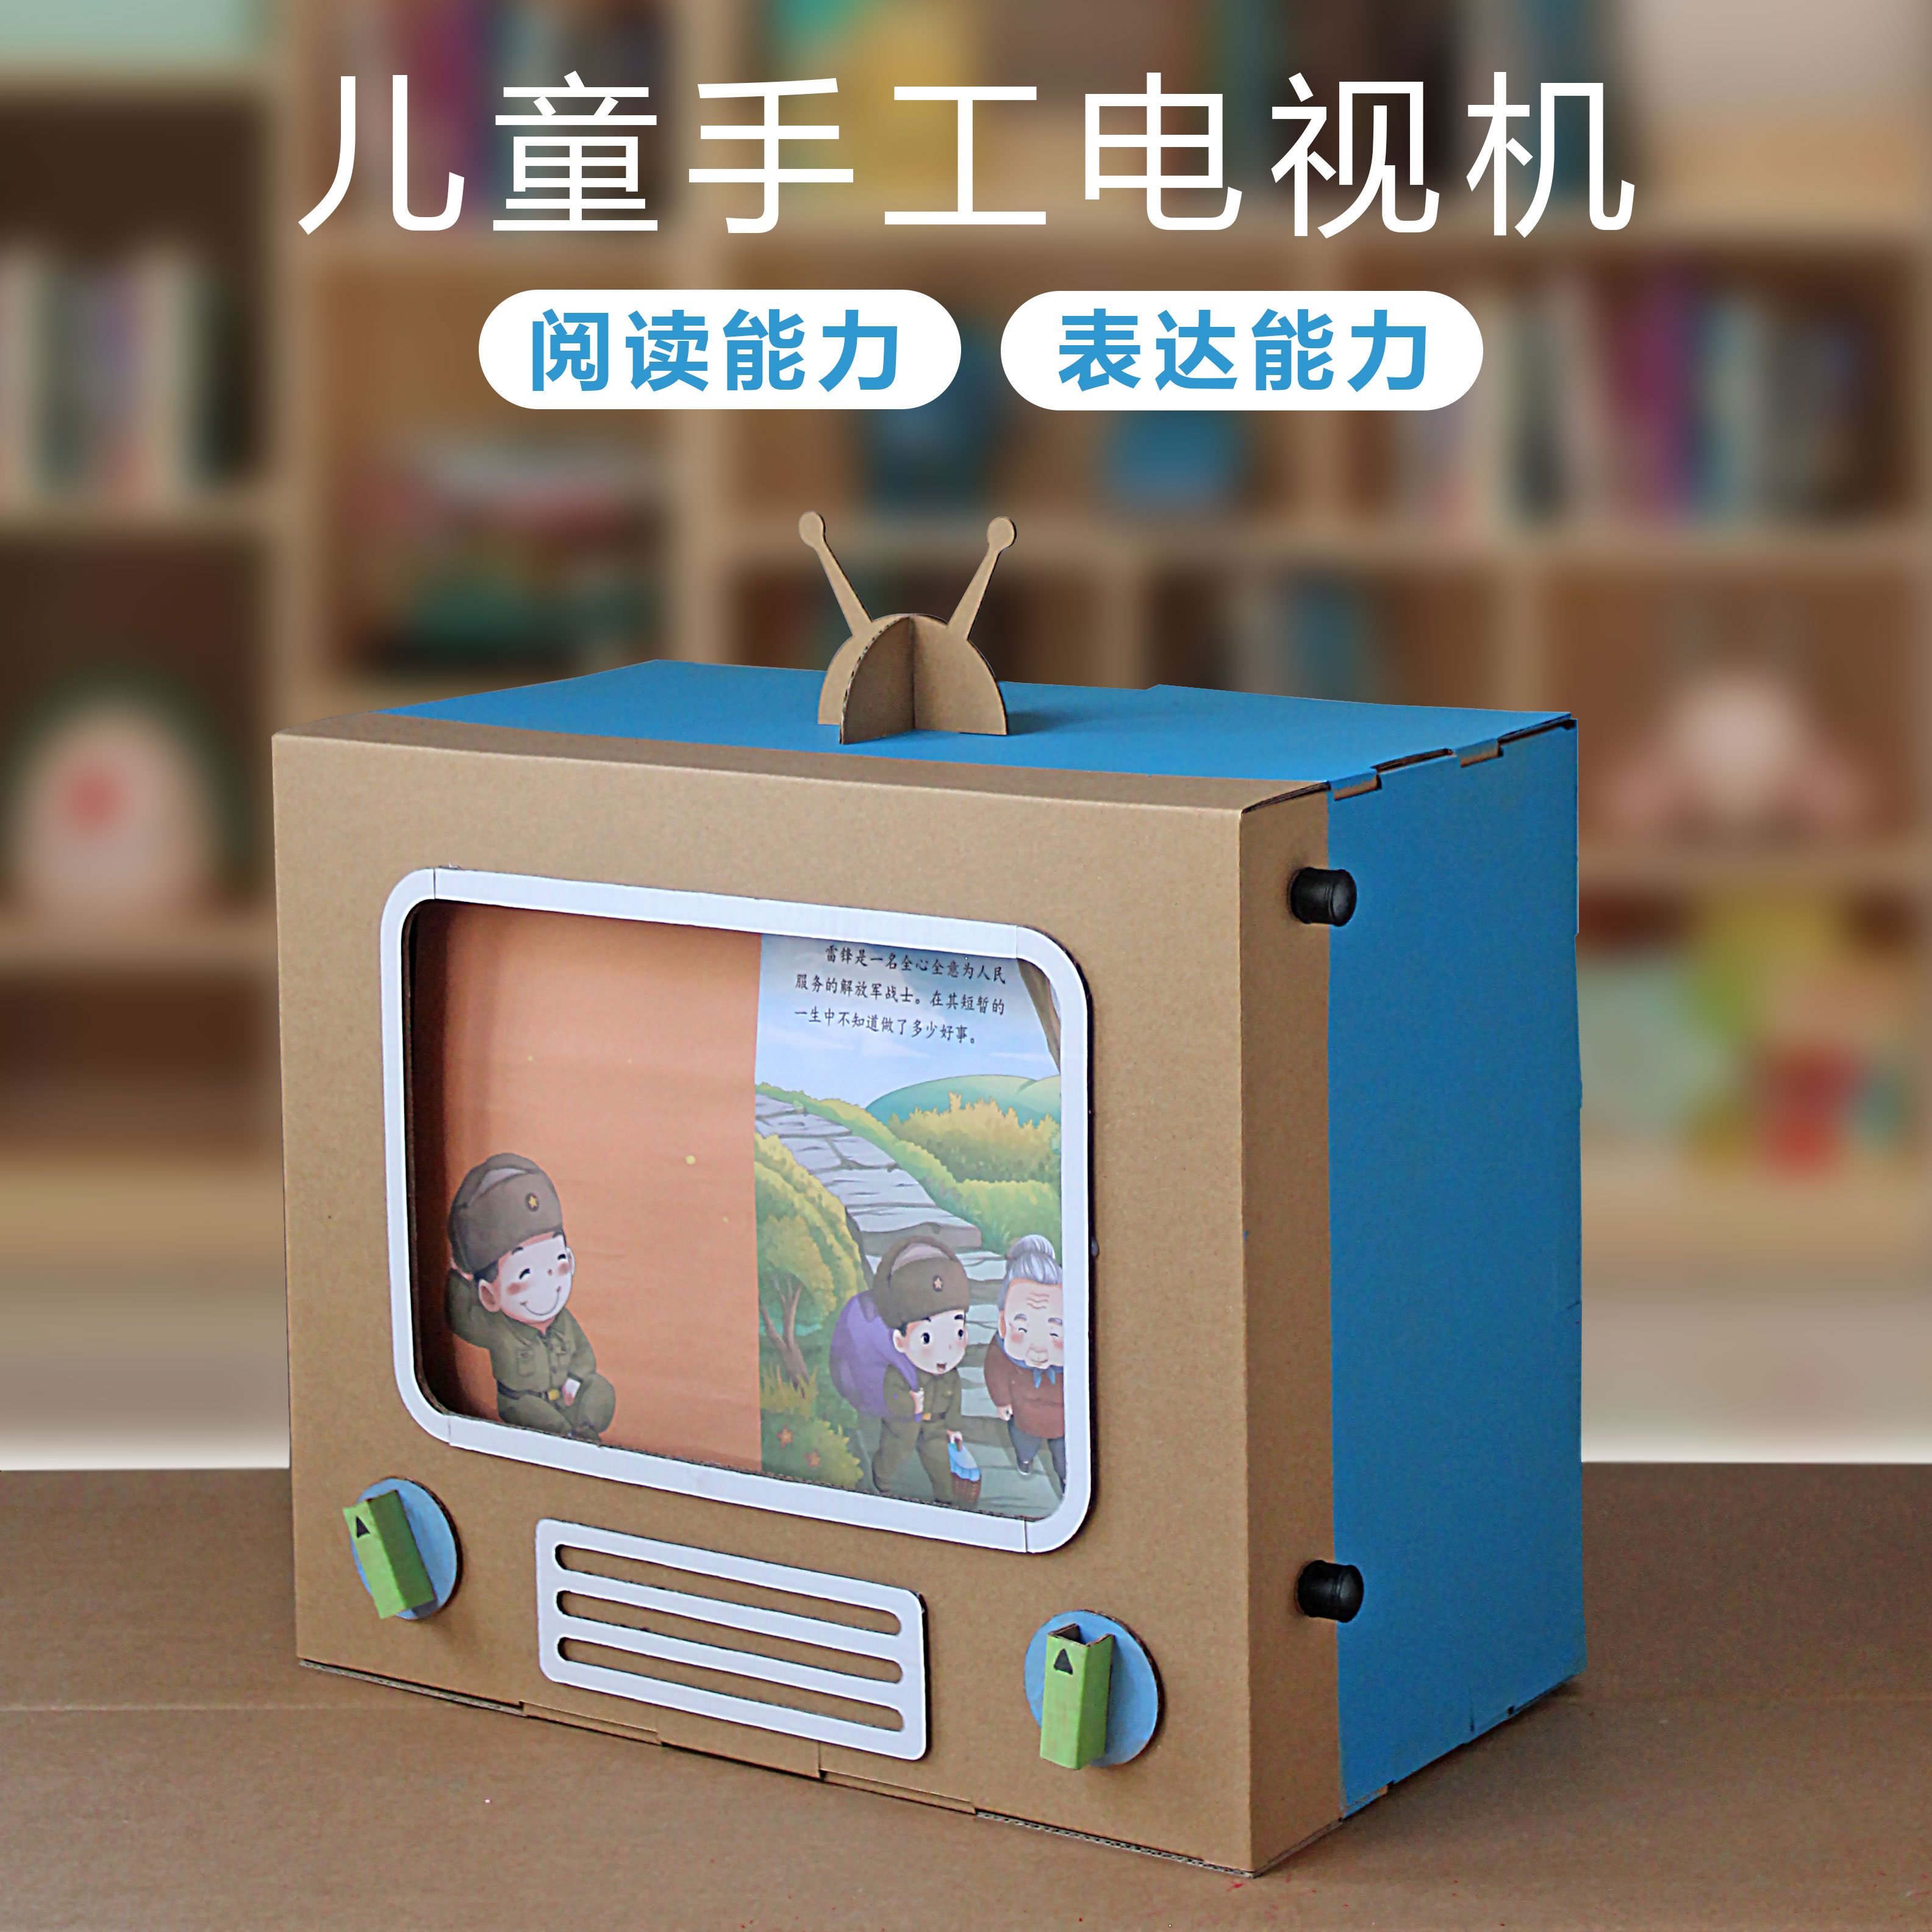 儿童手工故事电视纸板自制教具diy中班幼儿园小班纸箱盒子材料